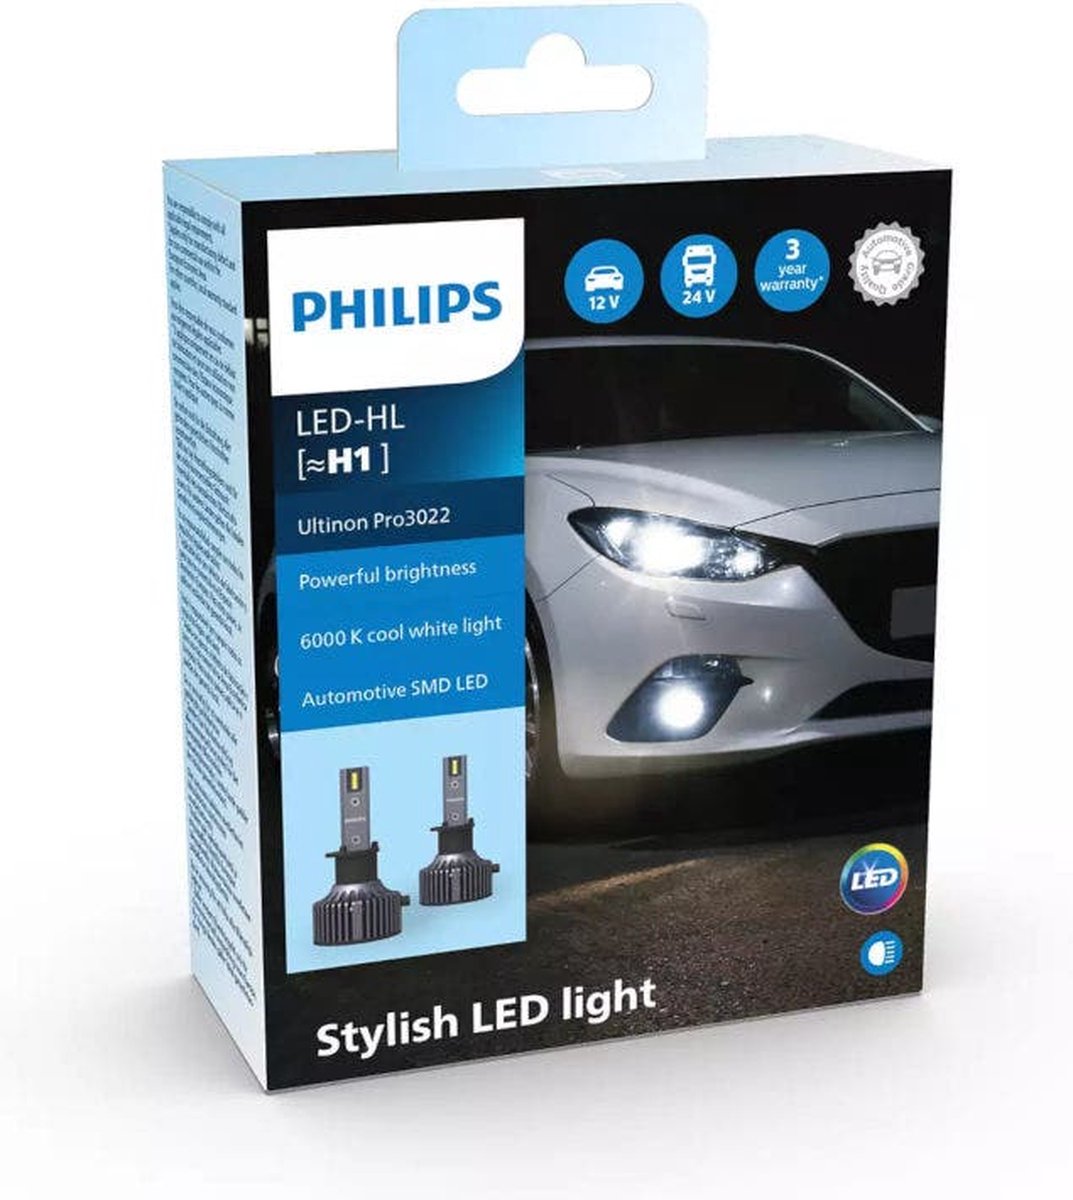 Philips Ultinon Pro3022 LED-HL H1 set LUM11258U3022X2